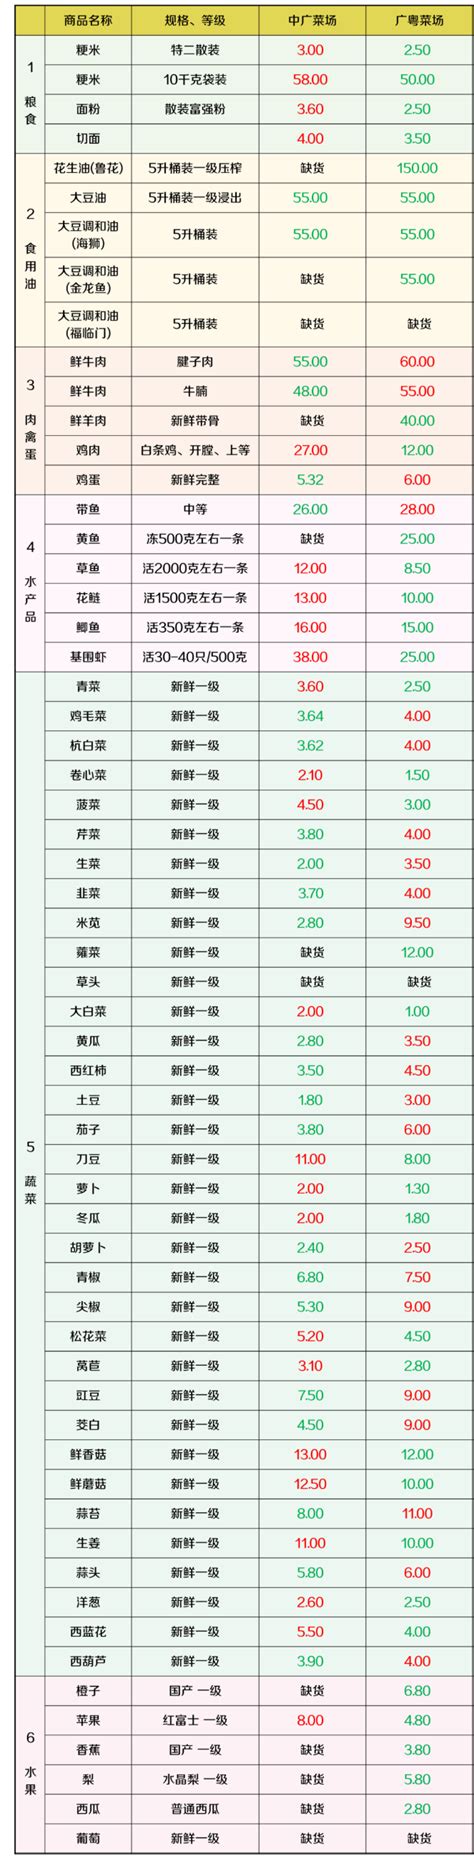 上海虹口区最新物价信息(5月20日发布) - 上海慢慢看